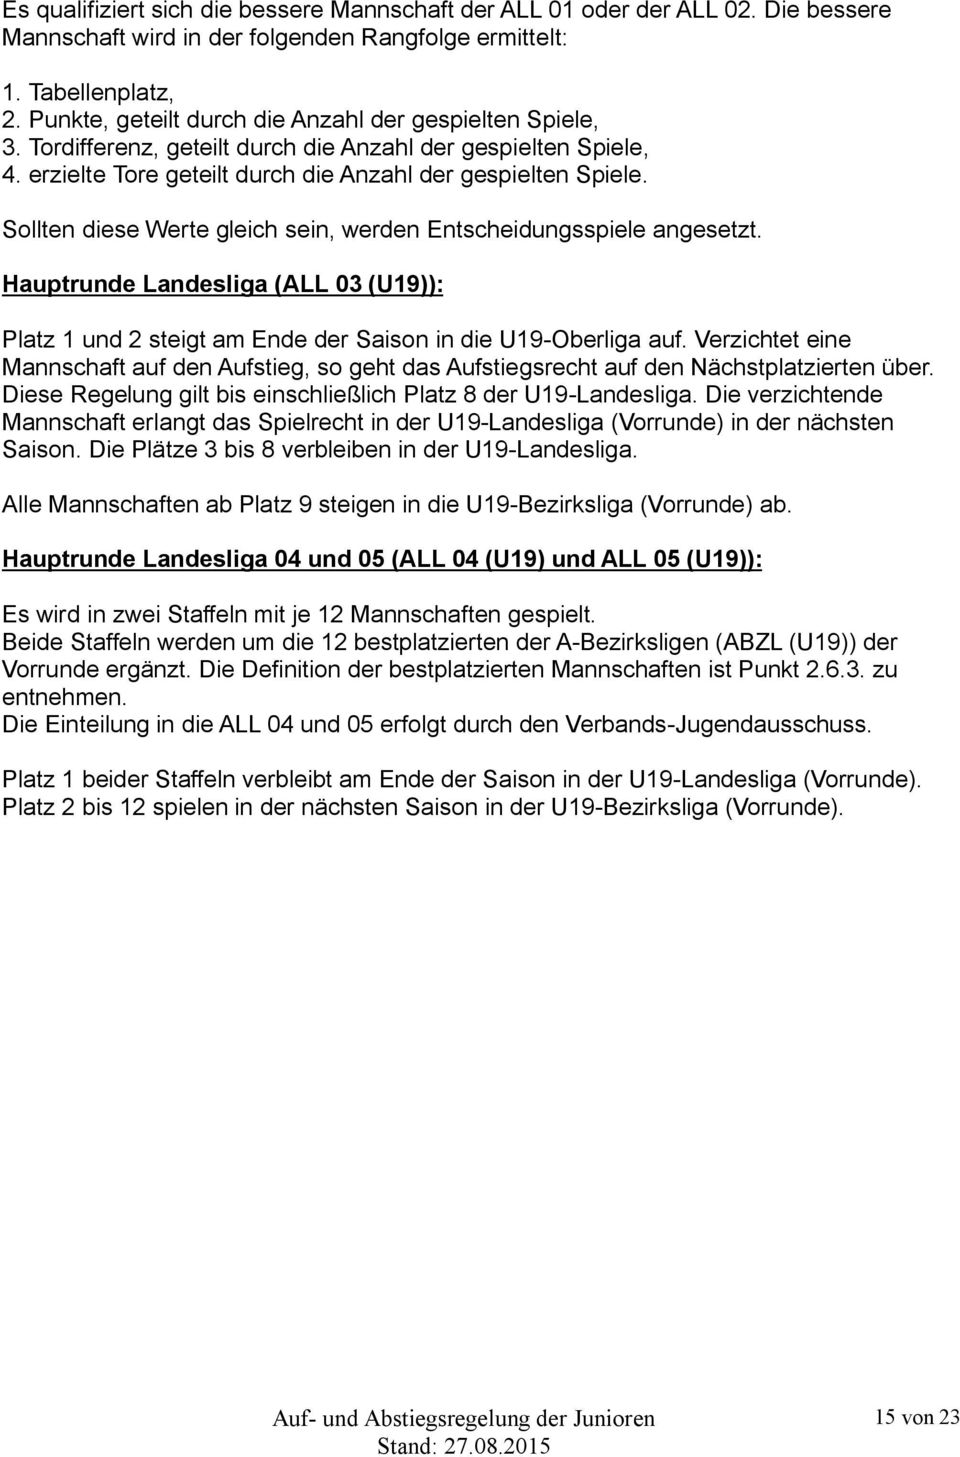 Sollten diese Werte gleich sein, werden Entscheidungsspiele angesetzt. Hauptrunde Landesliga (ALL 03 (U19)): Platz 1 und 2 steigt am Ende der Saison in die U19-Oberliga auf.